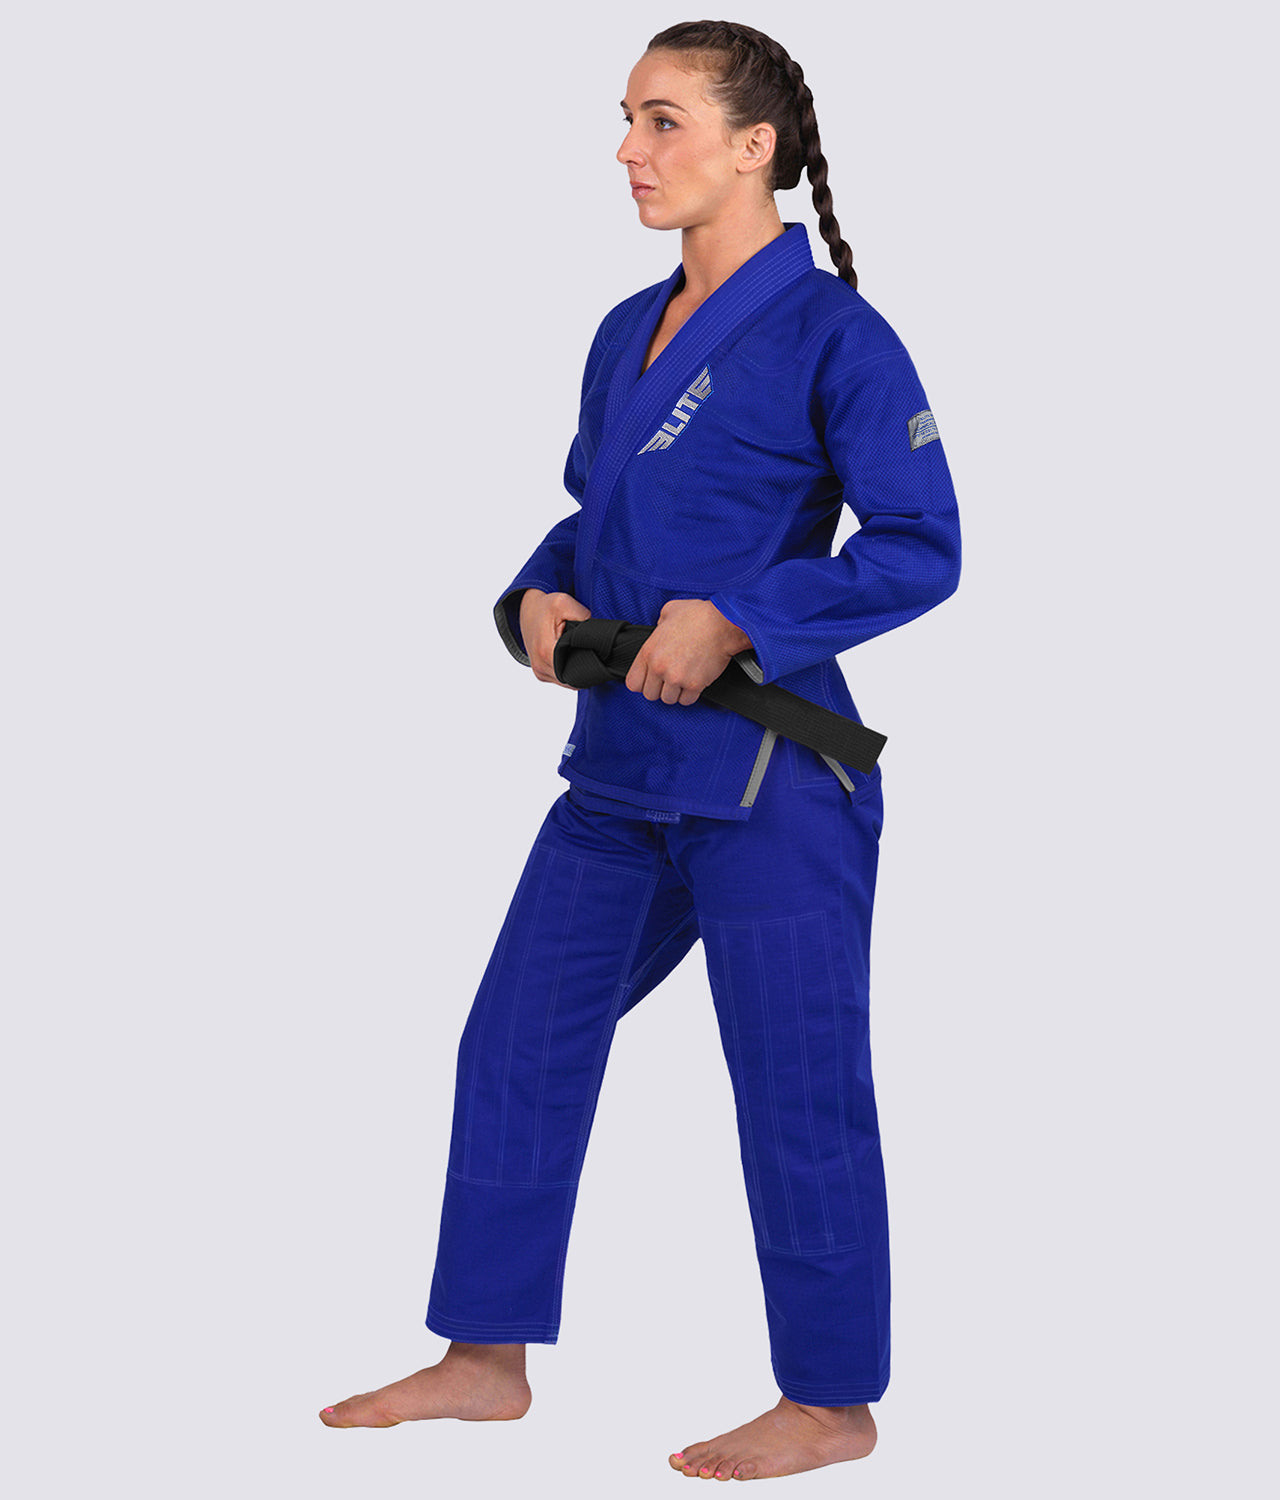 Women's Core Blue Brazilian Jiu Jitsu BJJ Gi